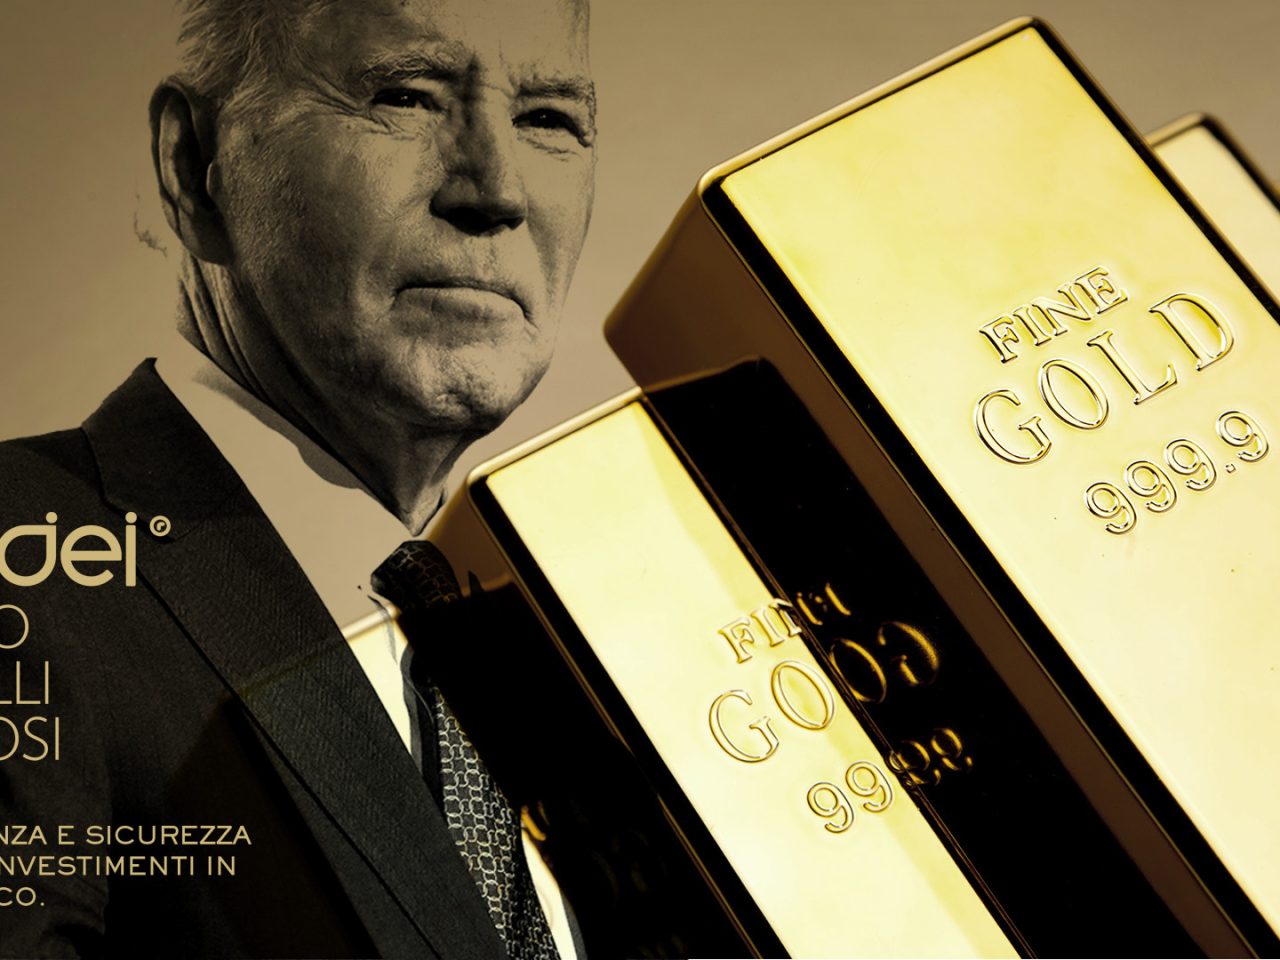 Orodei Banco Metalli Preziosi: Possibili Reazioni del Mercato alla Sostituzione di Biden come Candidato Democratico ed Implicazioni per il Prezzo dell’Oro